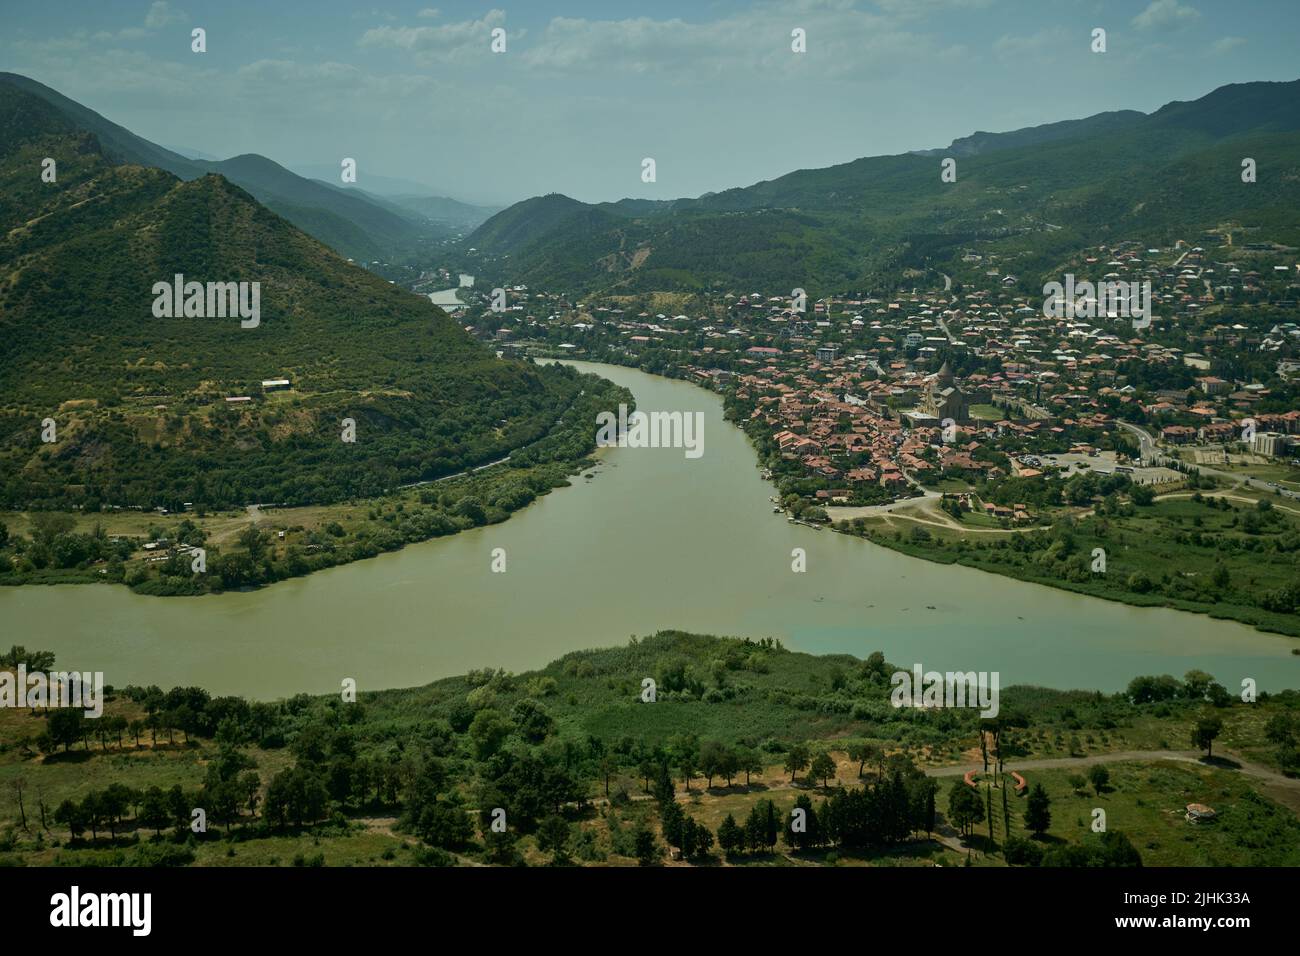 Georgia ,Mtskheta, confluenza dei fiumi Aragvi e Kura (Mtkvari) e la città di Mtskheta dalla cima del monte Jvari, vista giorno. Foto Stock